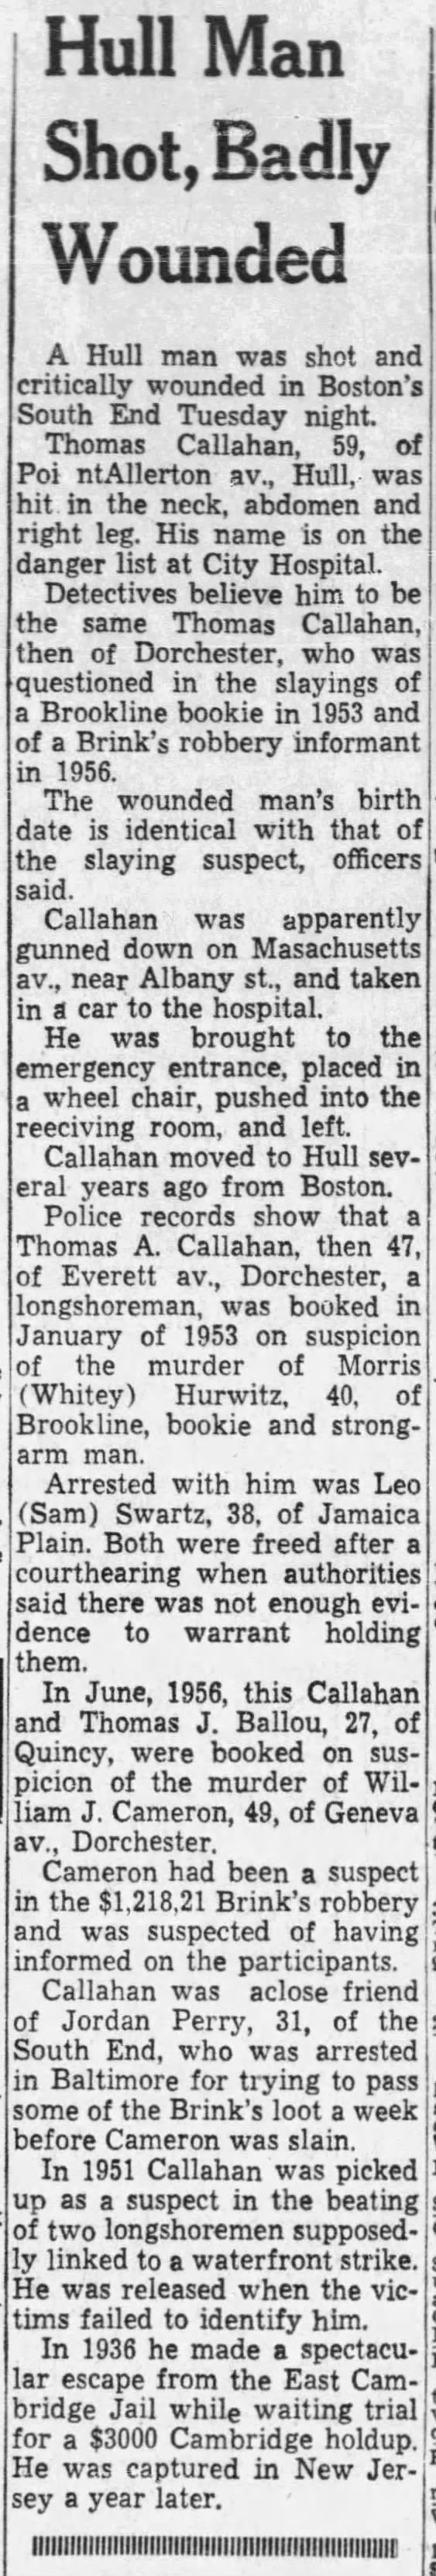 Tommy Callahan shot (23 Dec 1964)